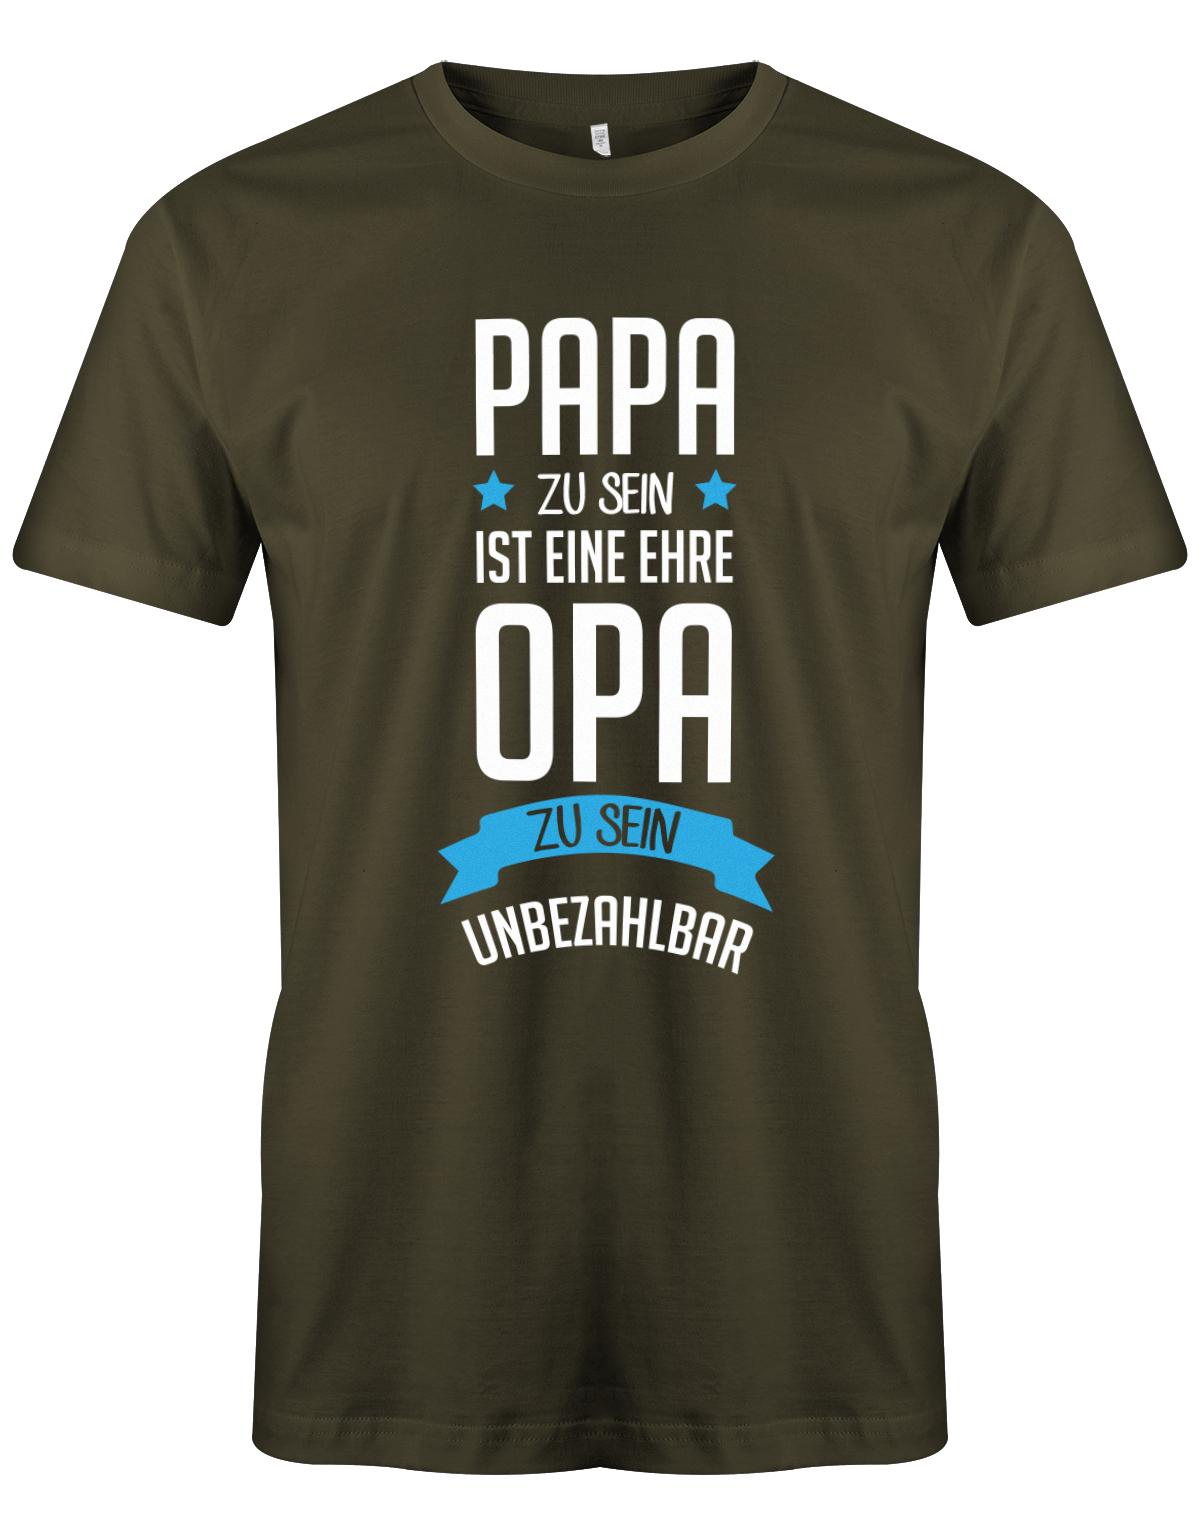 Opa T-Shirt Spruch für den werdenden Opa. Papa zu sein, ist eine Ehre, Opa zu sein unbezahlbar. Army